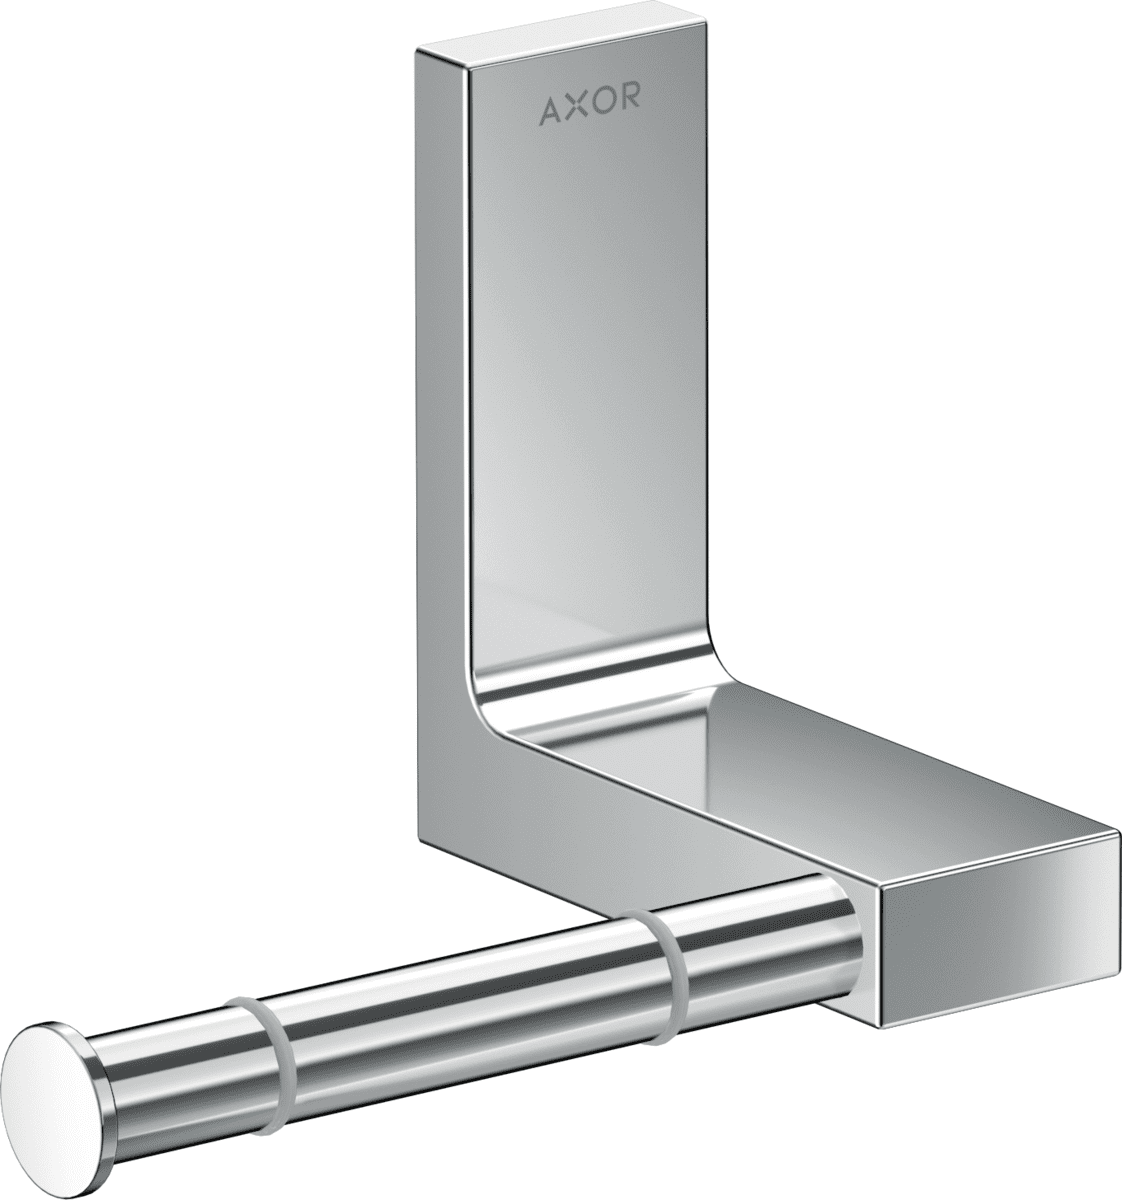 εικόνα του HANSGROHE AXOR Universal Rectangular Toilet paper holder #42656000 - Chrome